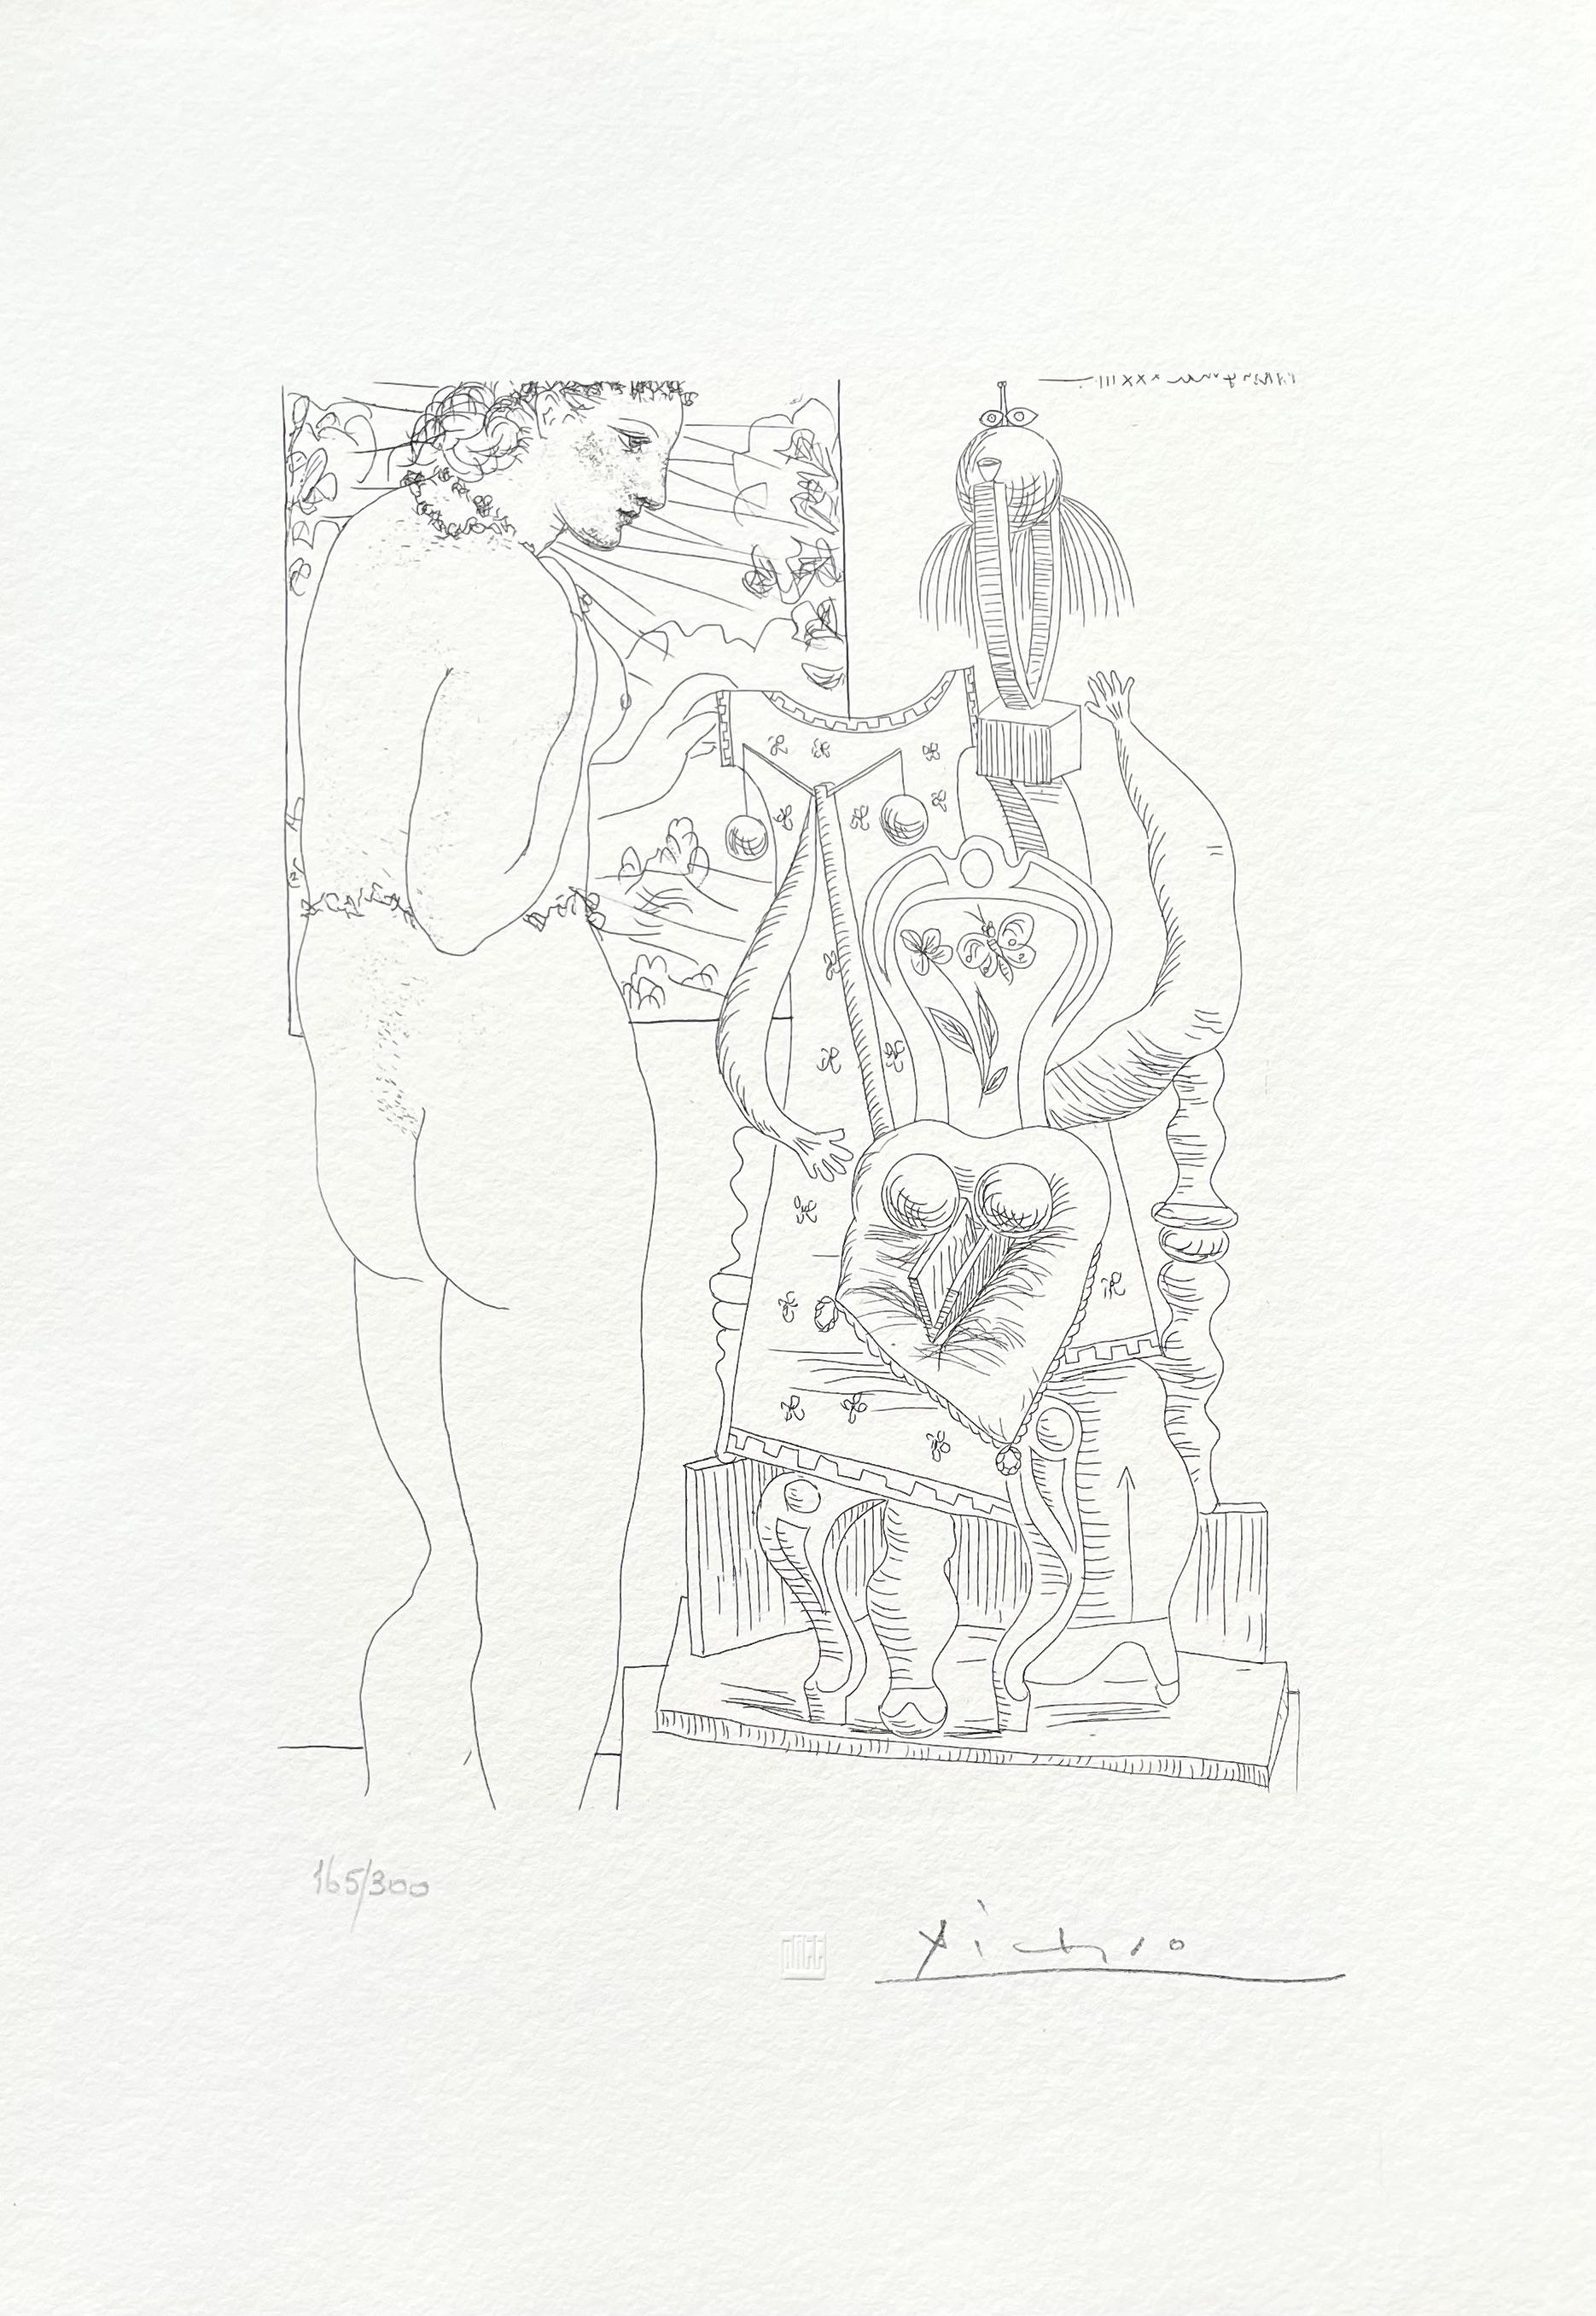 Picasso, Marie-Thérèse considérant son Effigie surréaliste sculptée (nach) – Print von Pablo Picasso